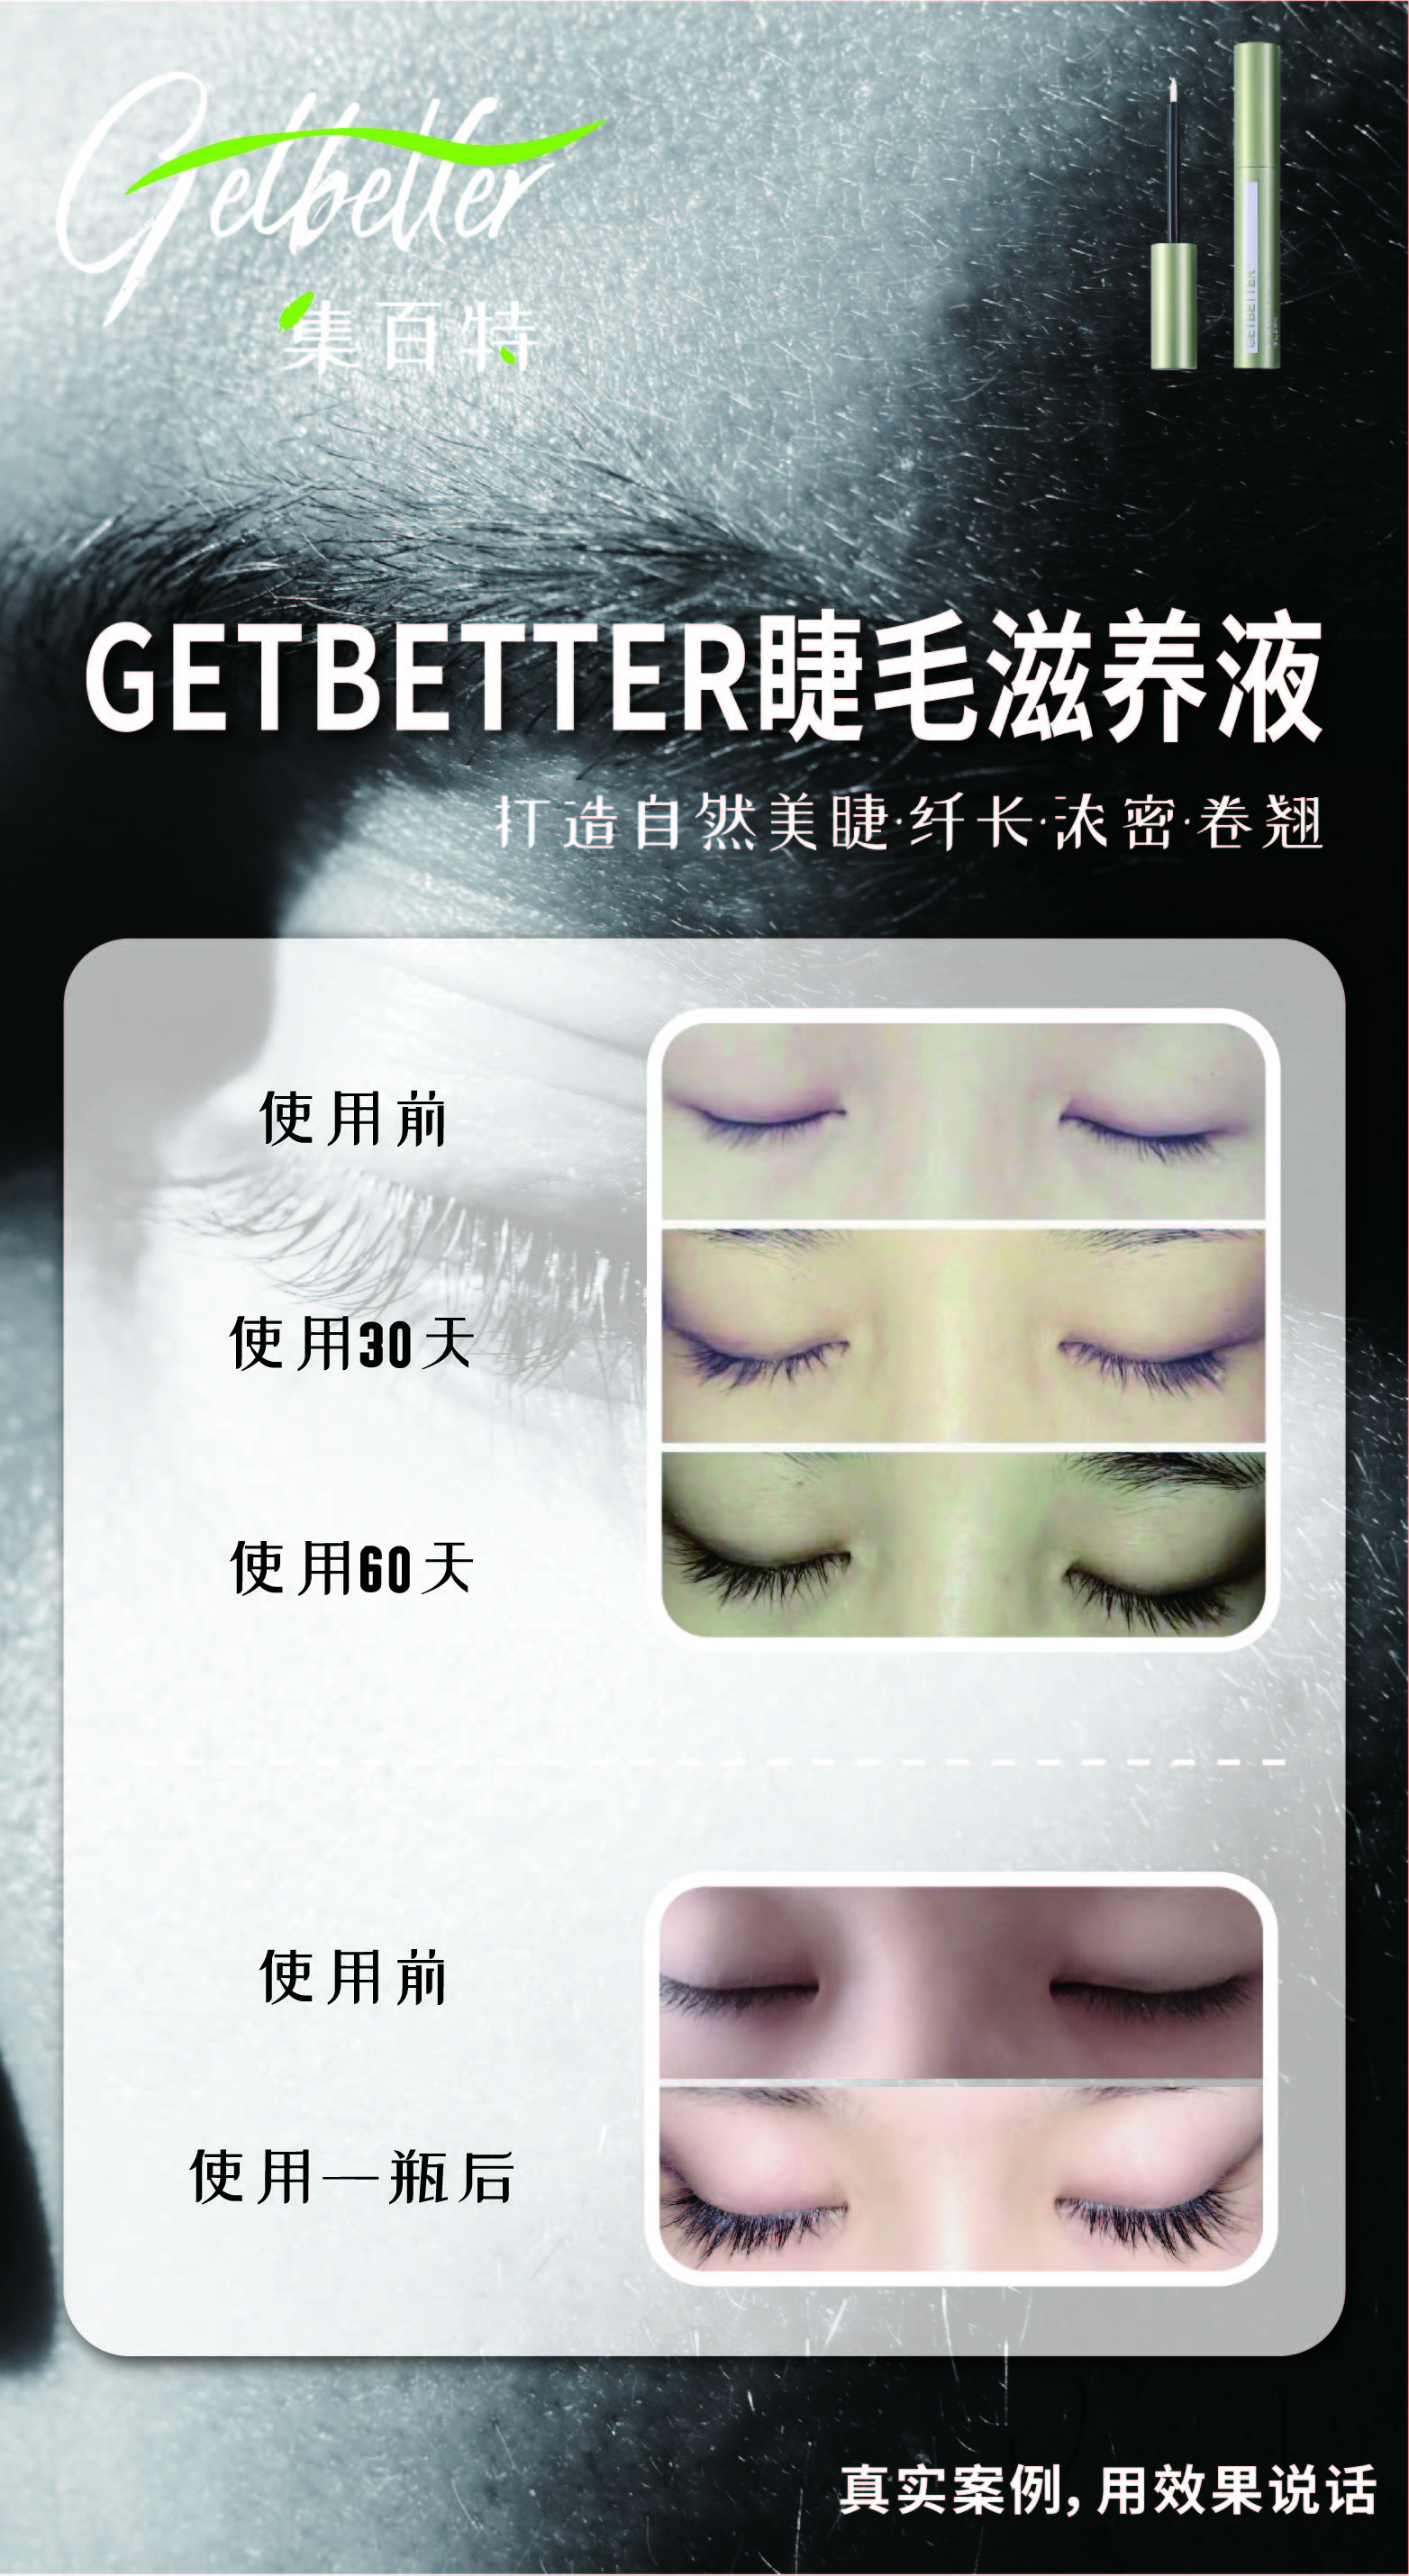 世界上有一种非常神奇的液体叫做GETBETTER集百特睫毛滋养液